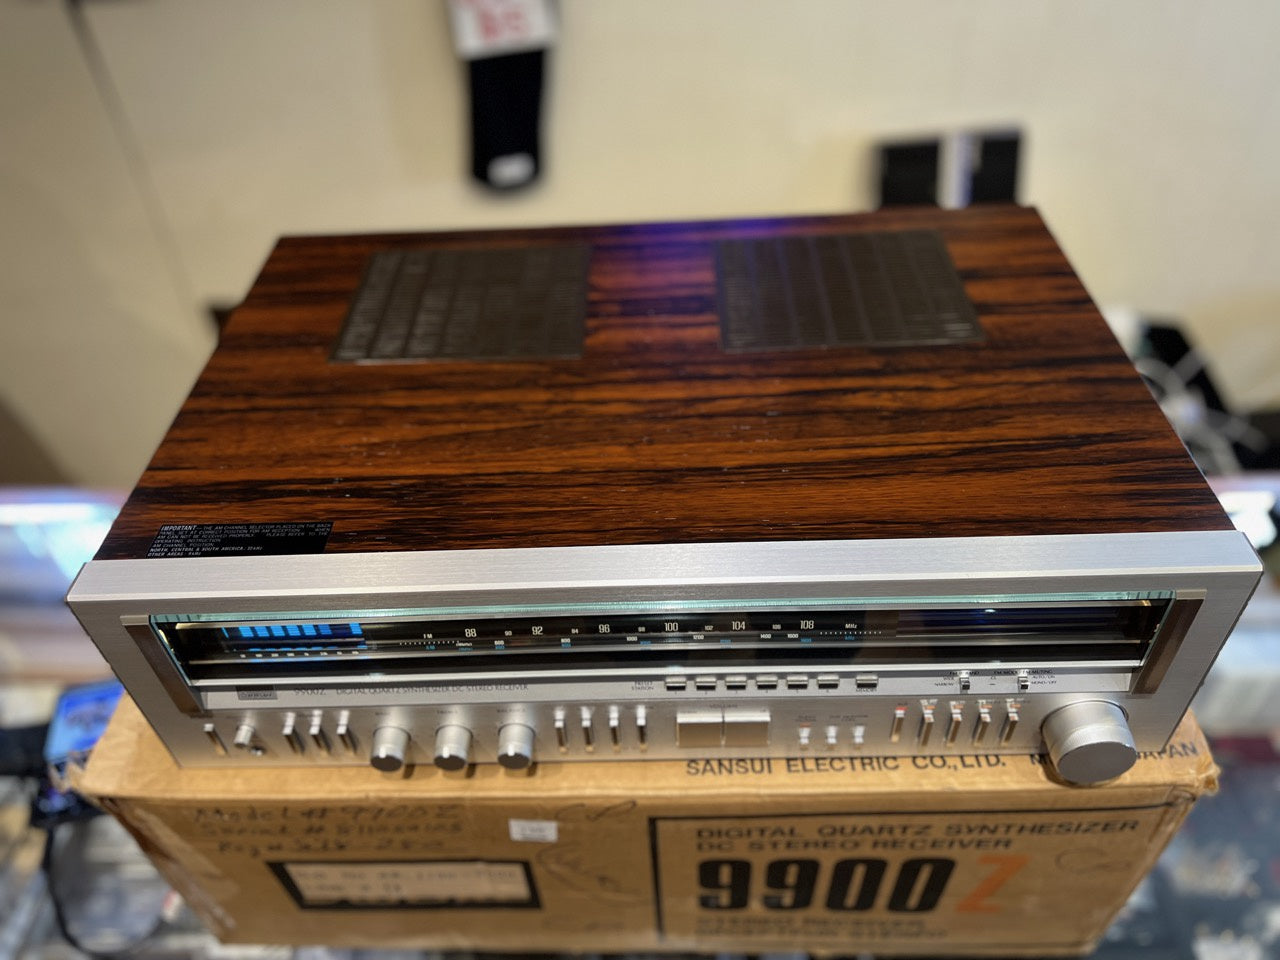 SALE * Sansui 9900Z Stereo Receiver * 160W RMS * 1981 * Box